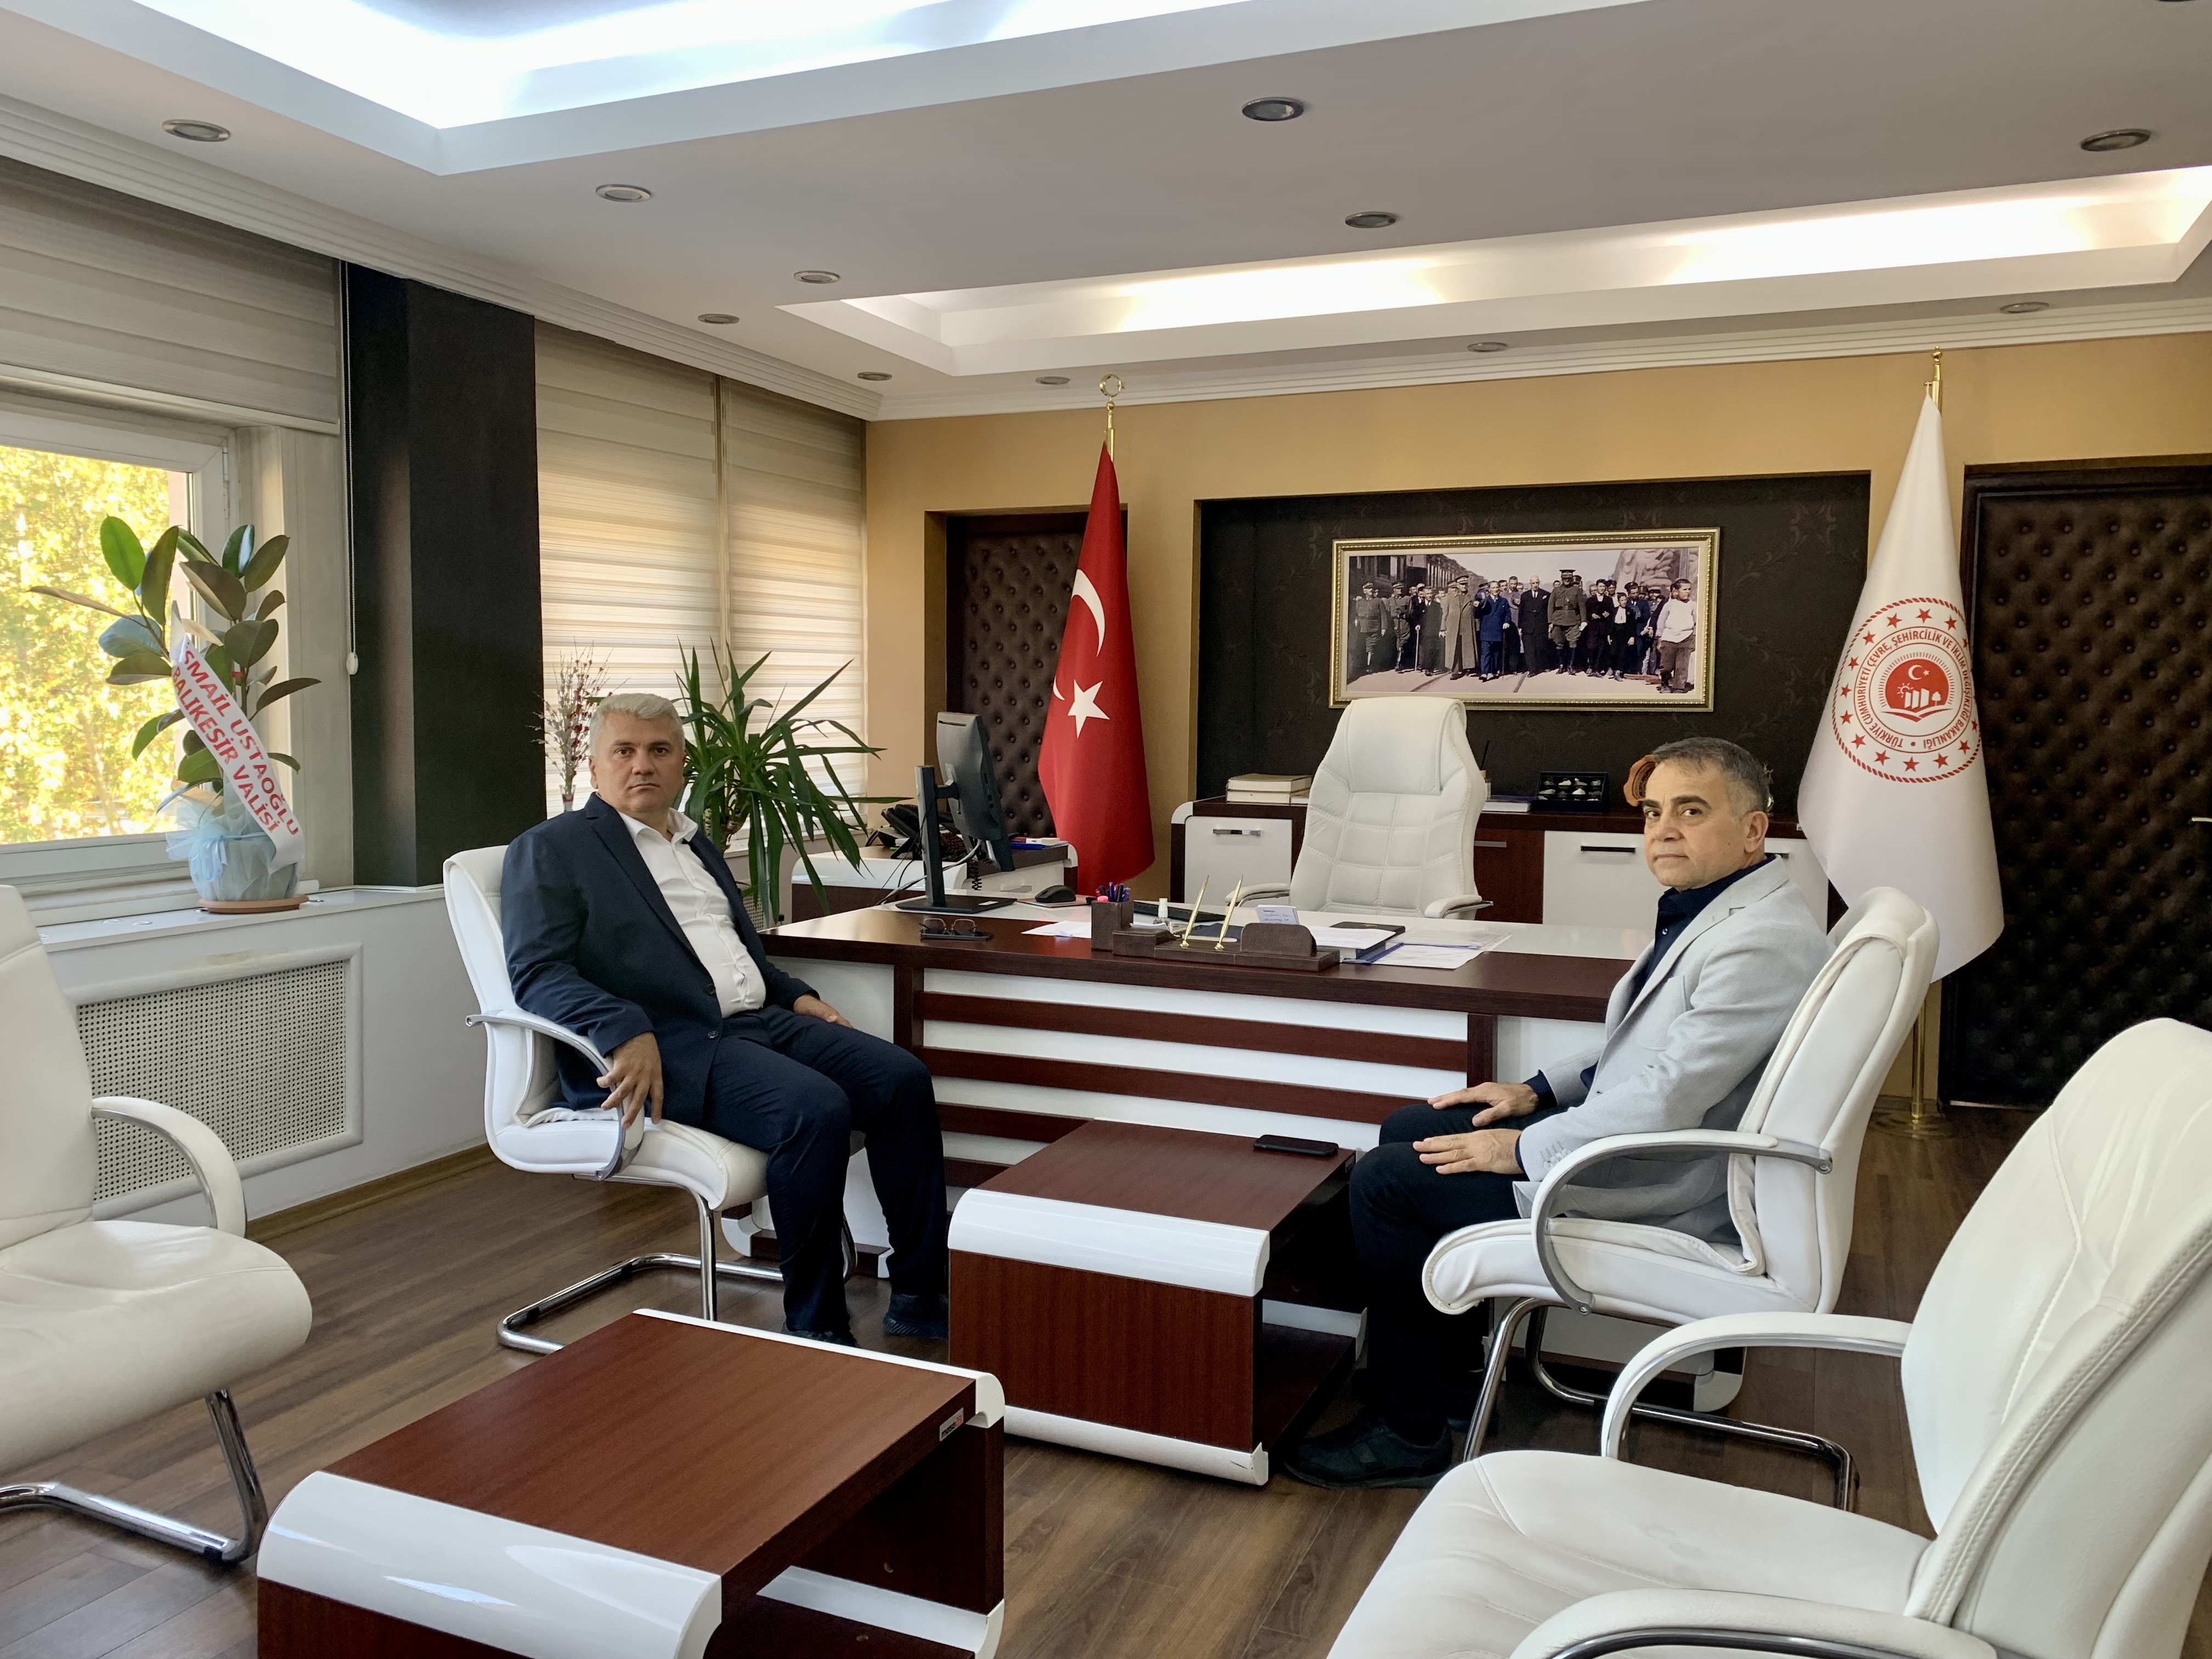 Sayın Millet Vekilimiz Mustafa CANBEY İl Müdürümüz Kadir KANDEMİR' i Makamında Ziyaret Etmiştir.